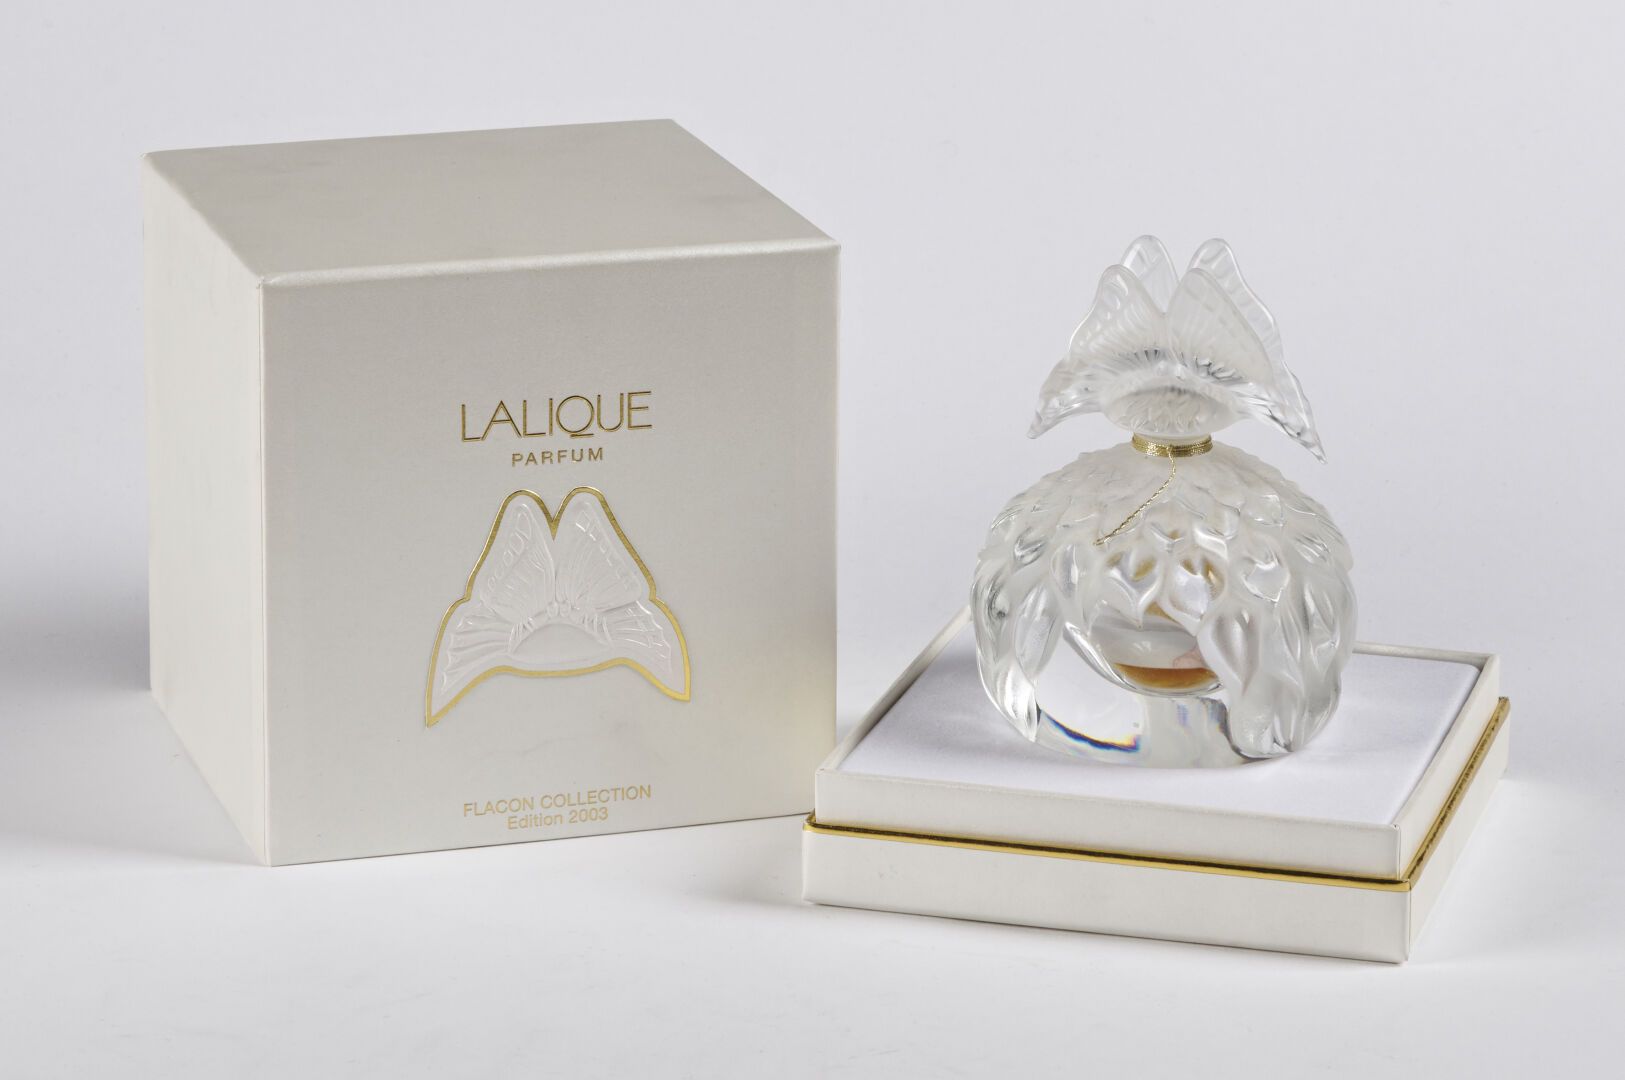 Null 克里斯托尔-拉利克

香水瓶，"蝴蝶 "模型，2003年的限量版。白色吹塑和压制缎面处理和抛光水晶的证明。在其原来的盒子里。

有签名和编号的001号&hellip;